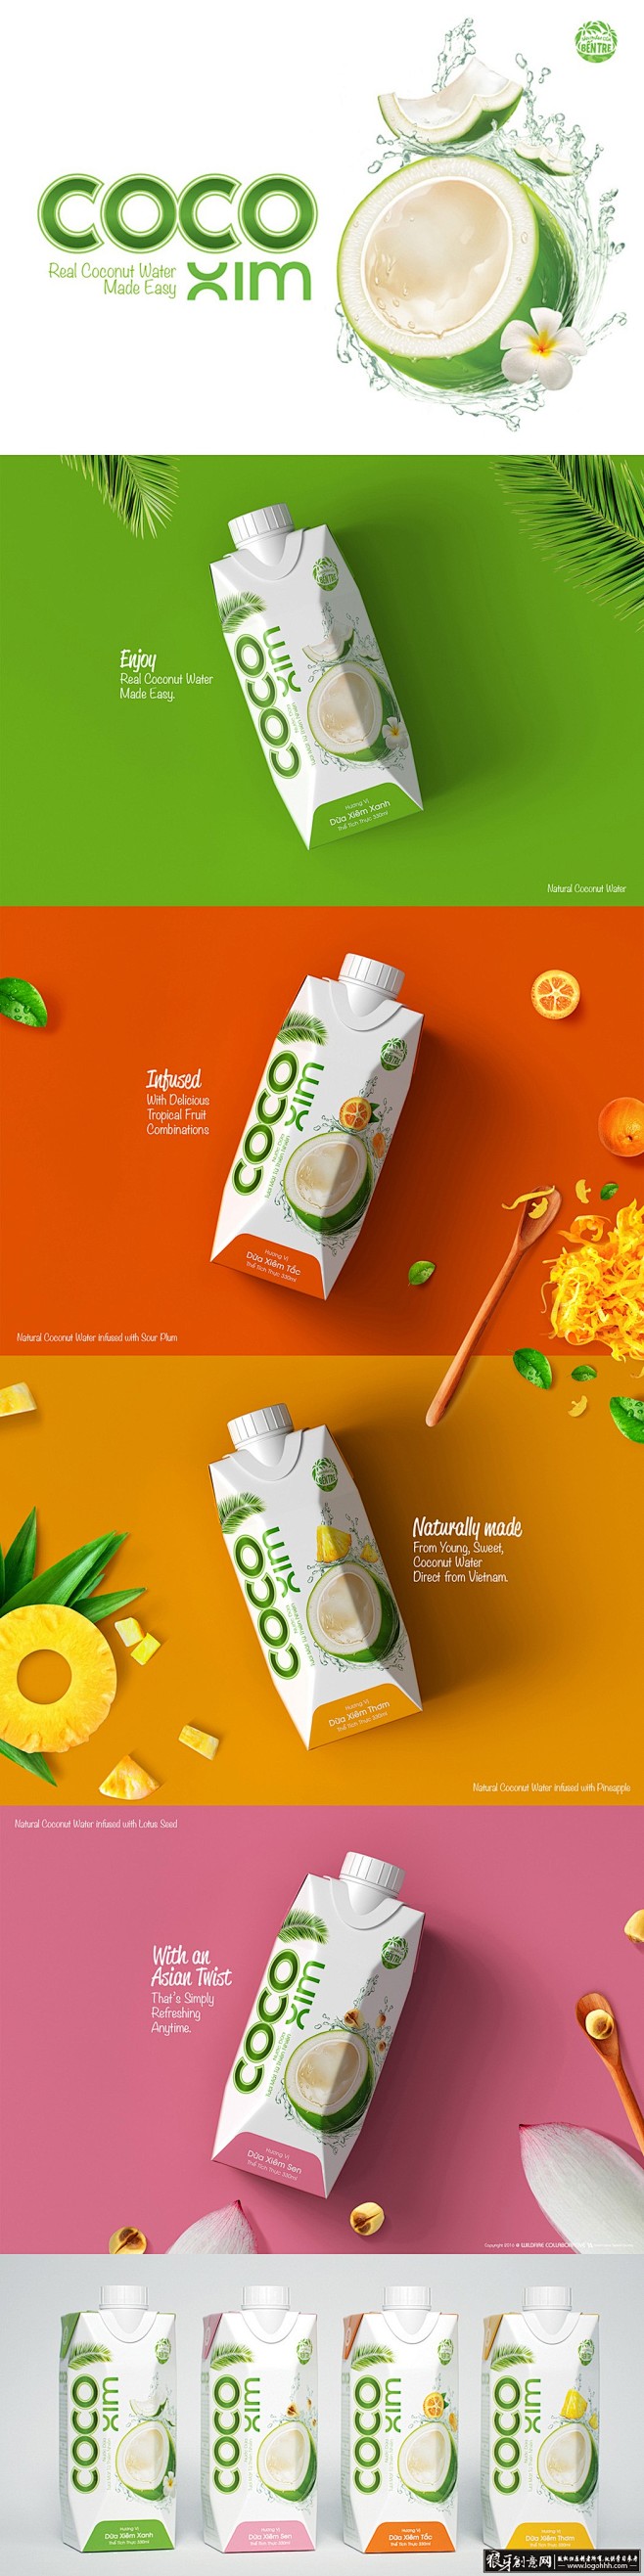 包装设计灵感 COCOXIM椰子汁 创意...